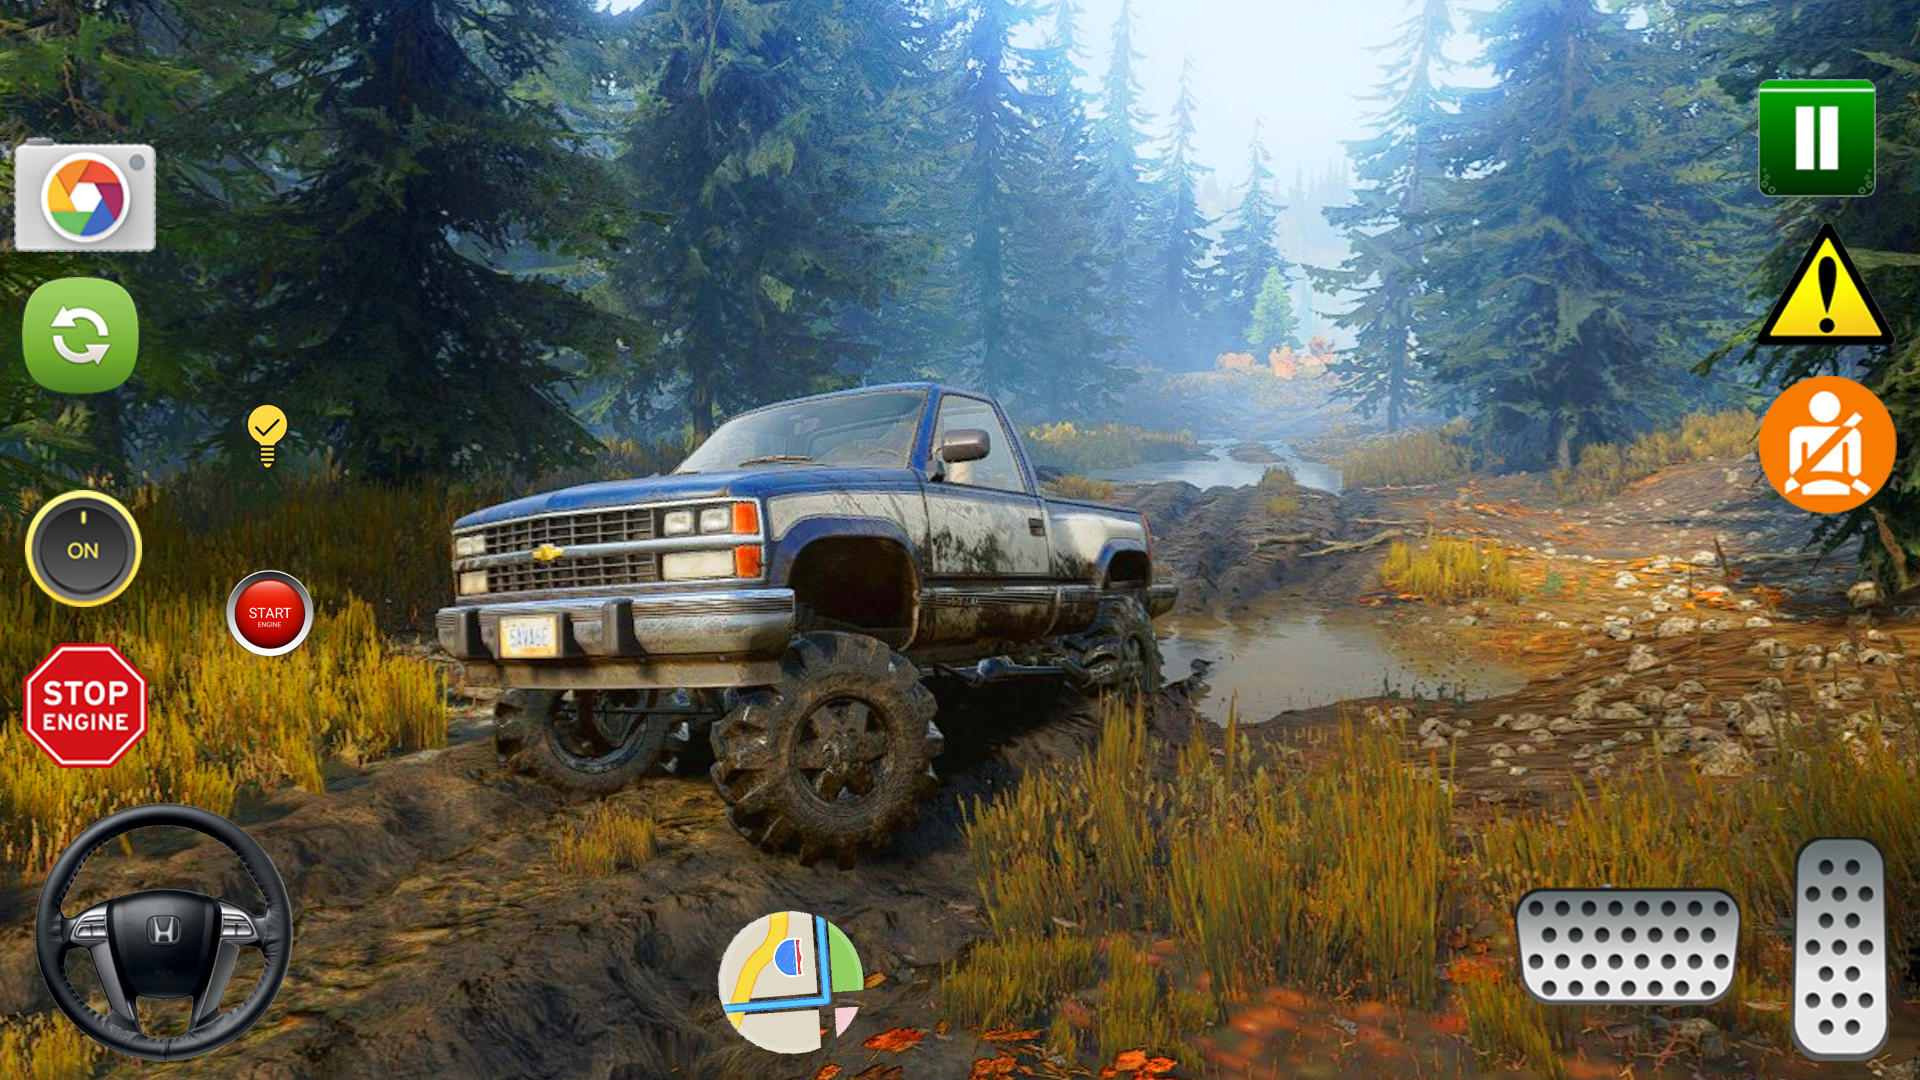 Screenshot 1 of Trò chơi xe jeep bùn Lái xe địa hình 0.1